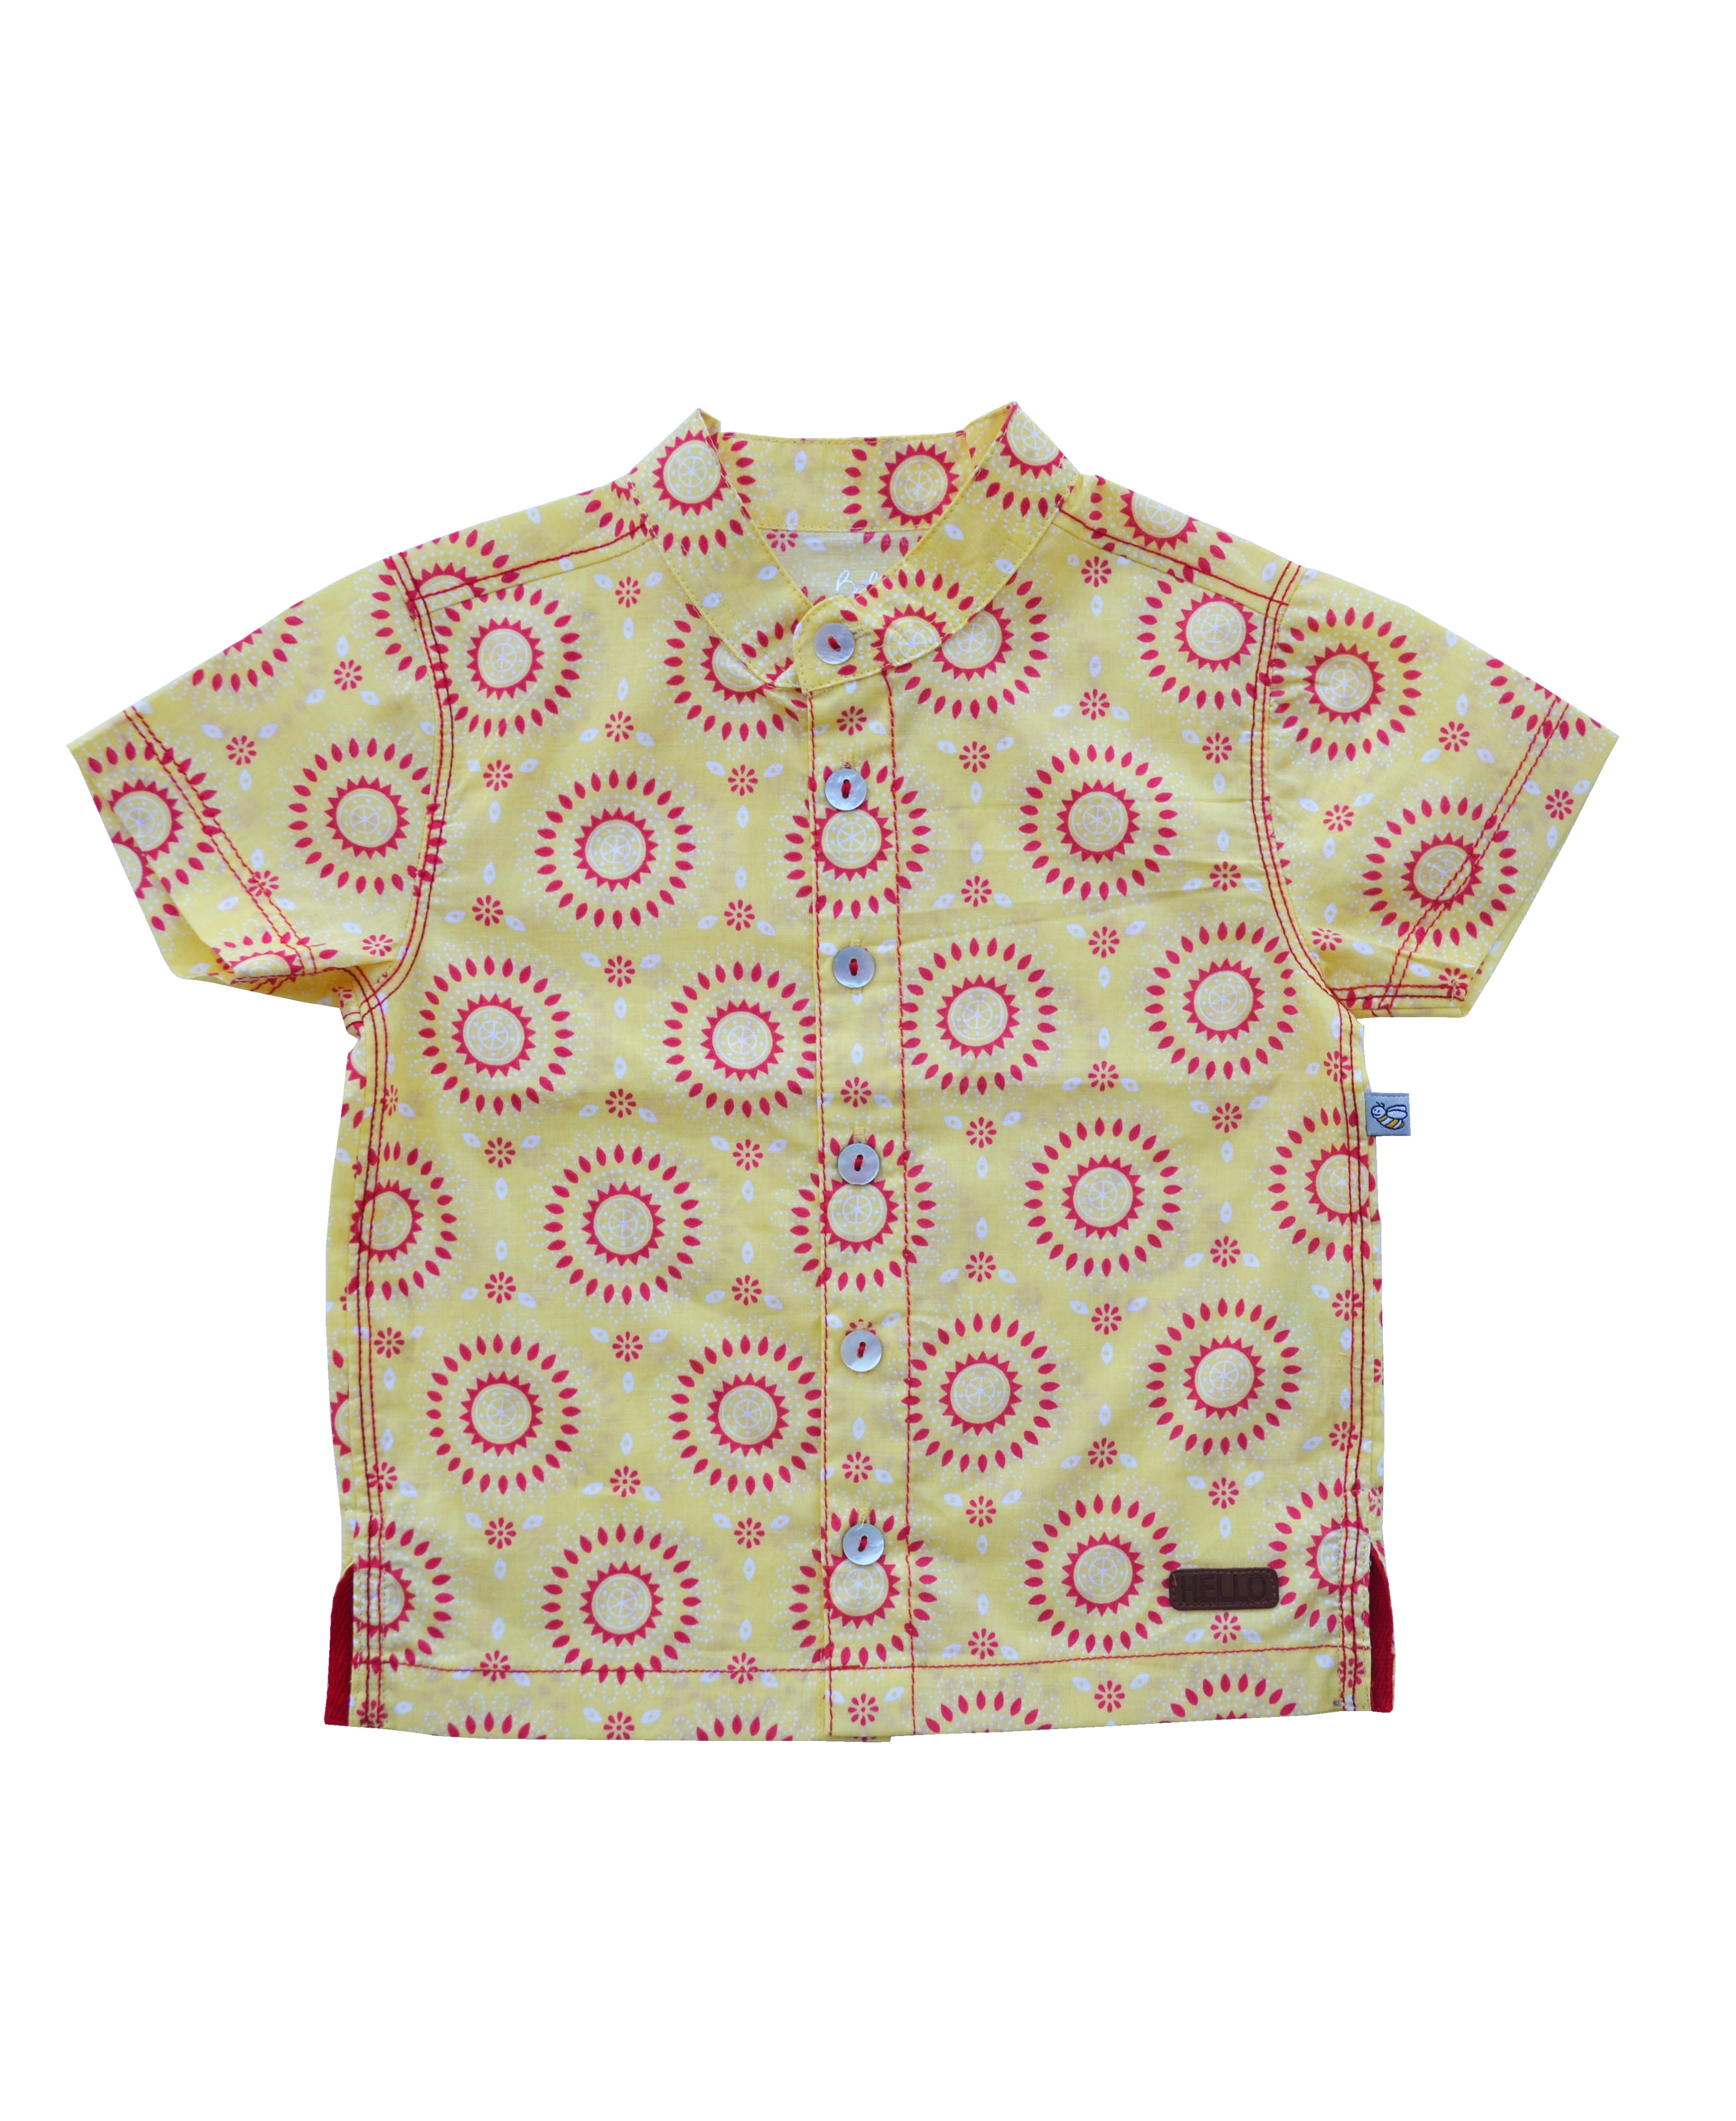 Allover Circles Print Yellow Short Sleeves Kurta Shirt (100% Cotton)